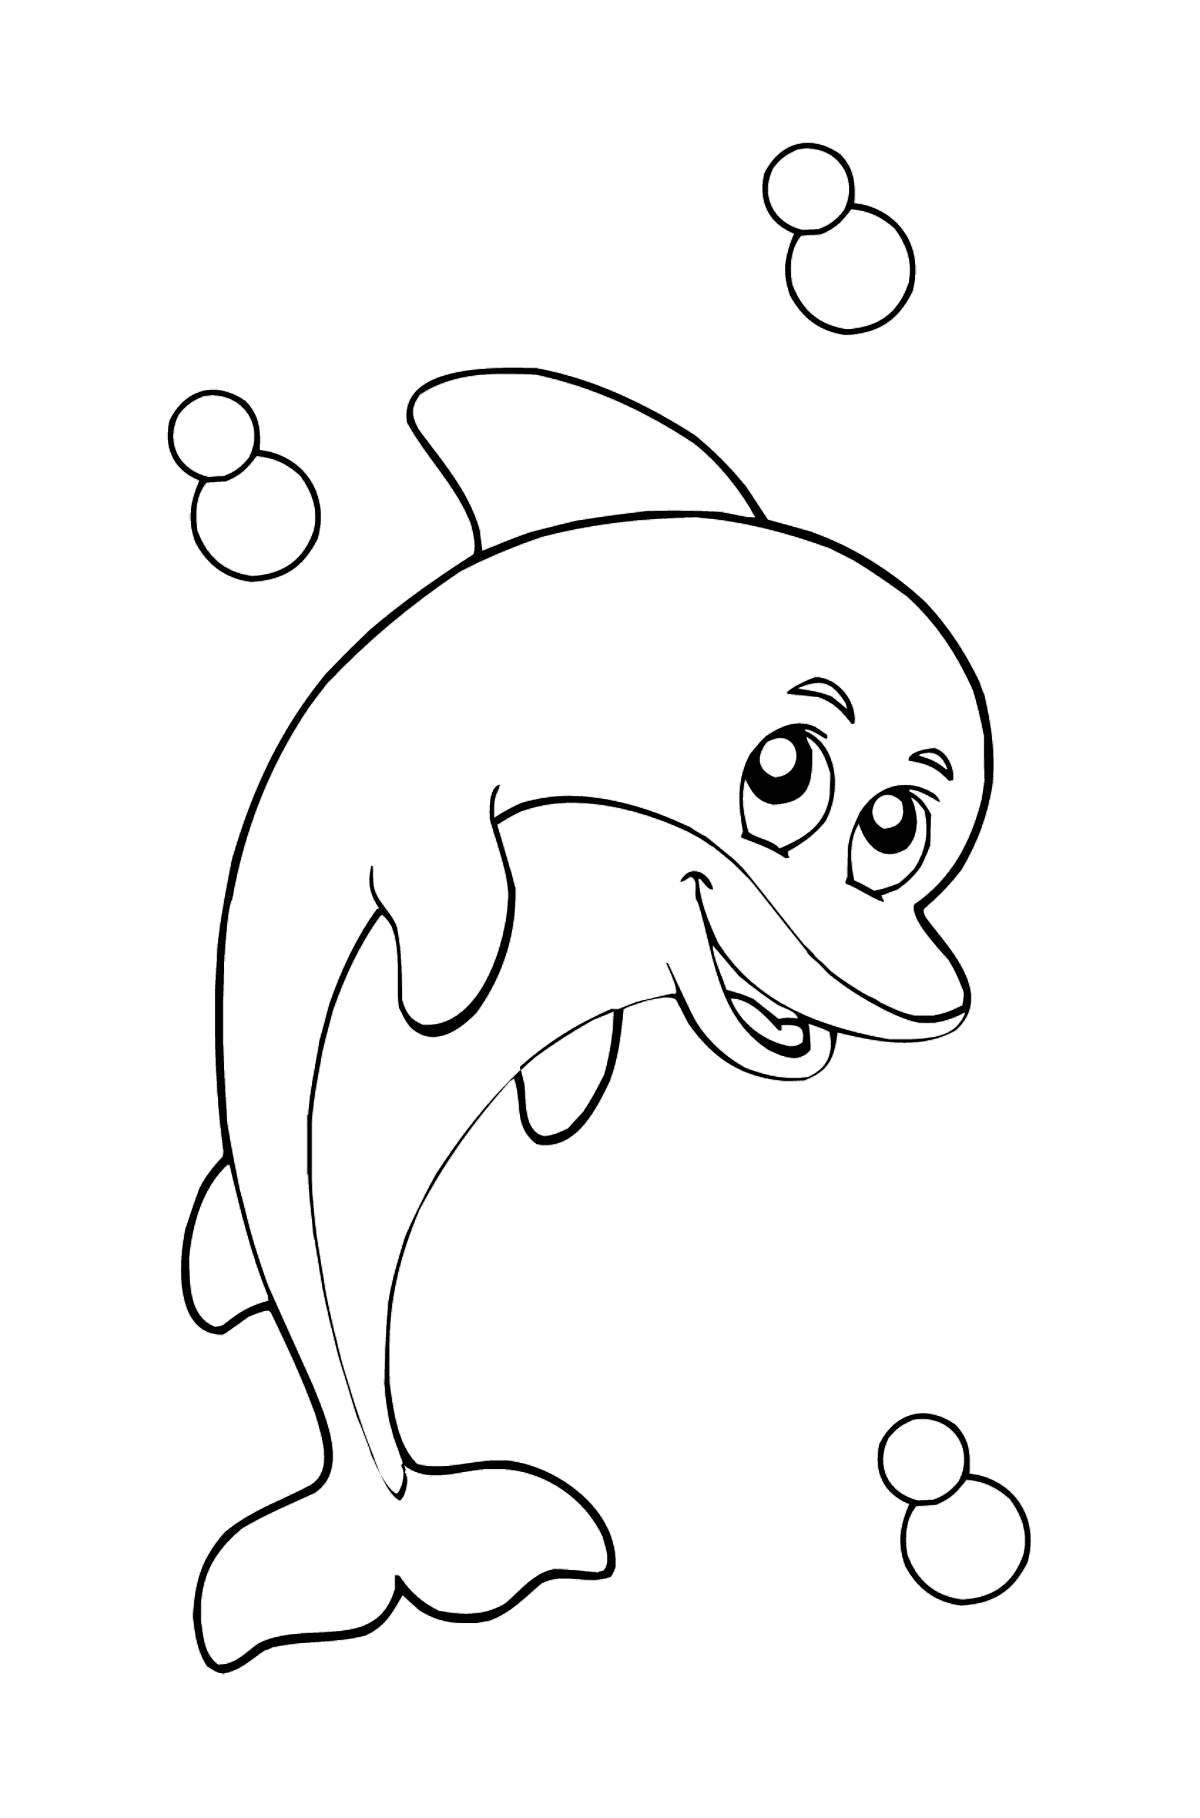 Image à colorier - Un dauphin - Coloriages pour les Enfants